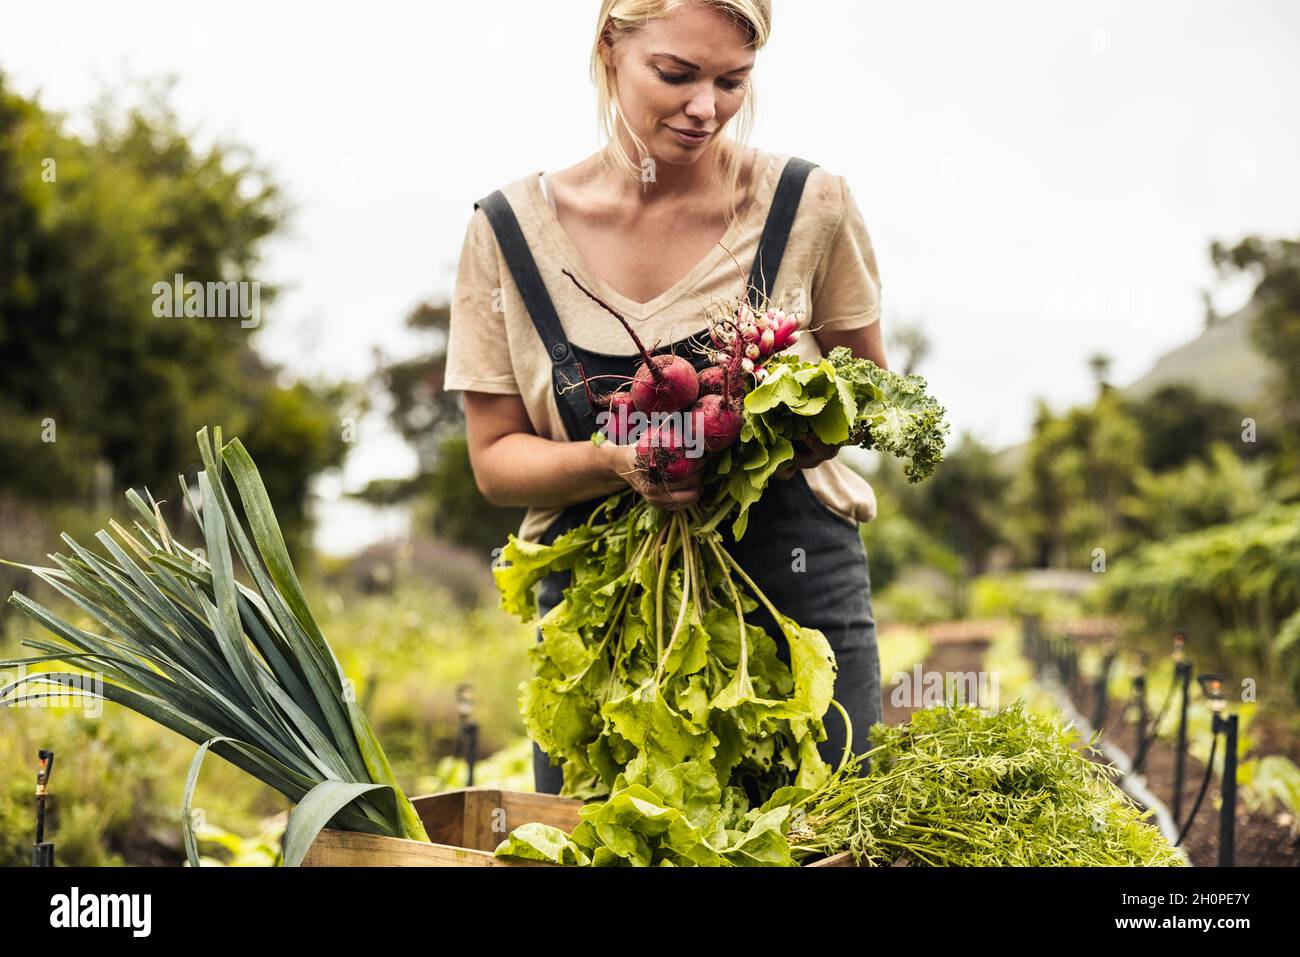 Selbstnachhaltiger Landwirt, der auf einem Bio-Bauernhof eine Vielzahl von frischen Produkten erntet. Junge Bäuerin sammelt frisches Gemüse in ihrem Garten. Frau Stockfoto